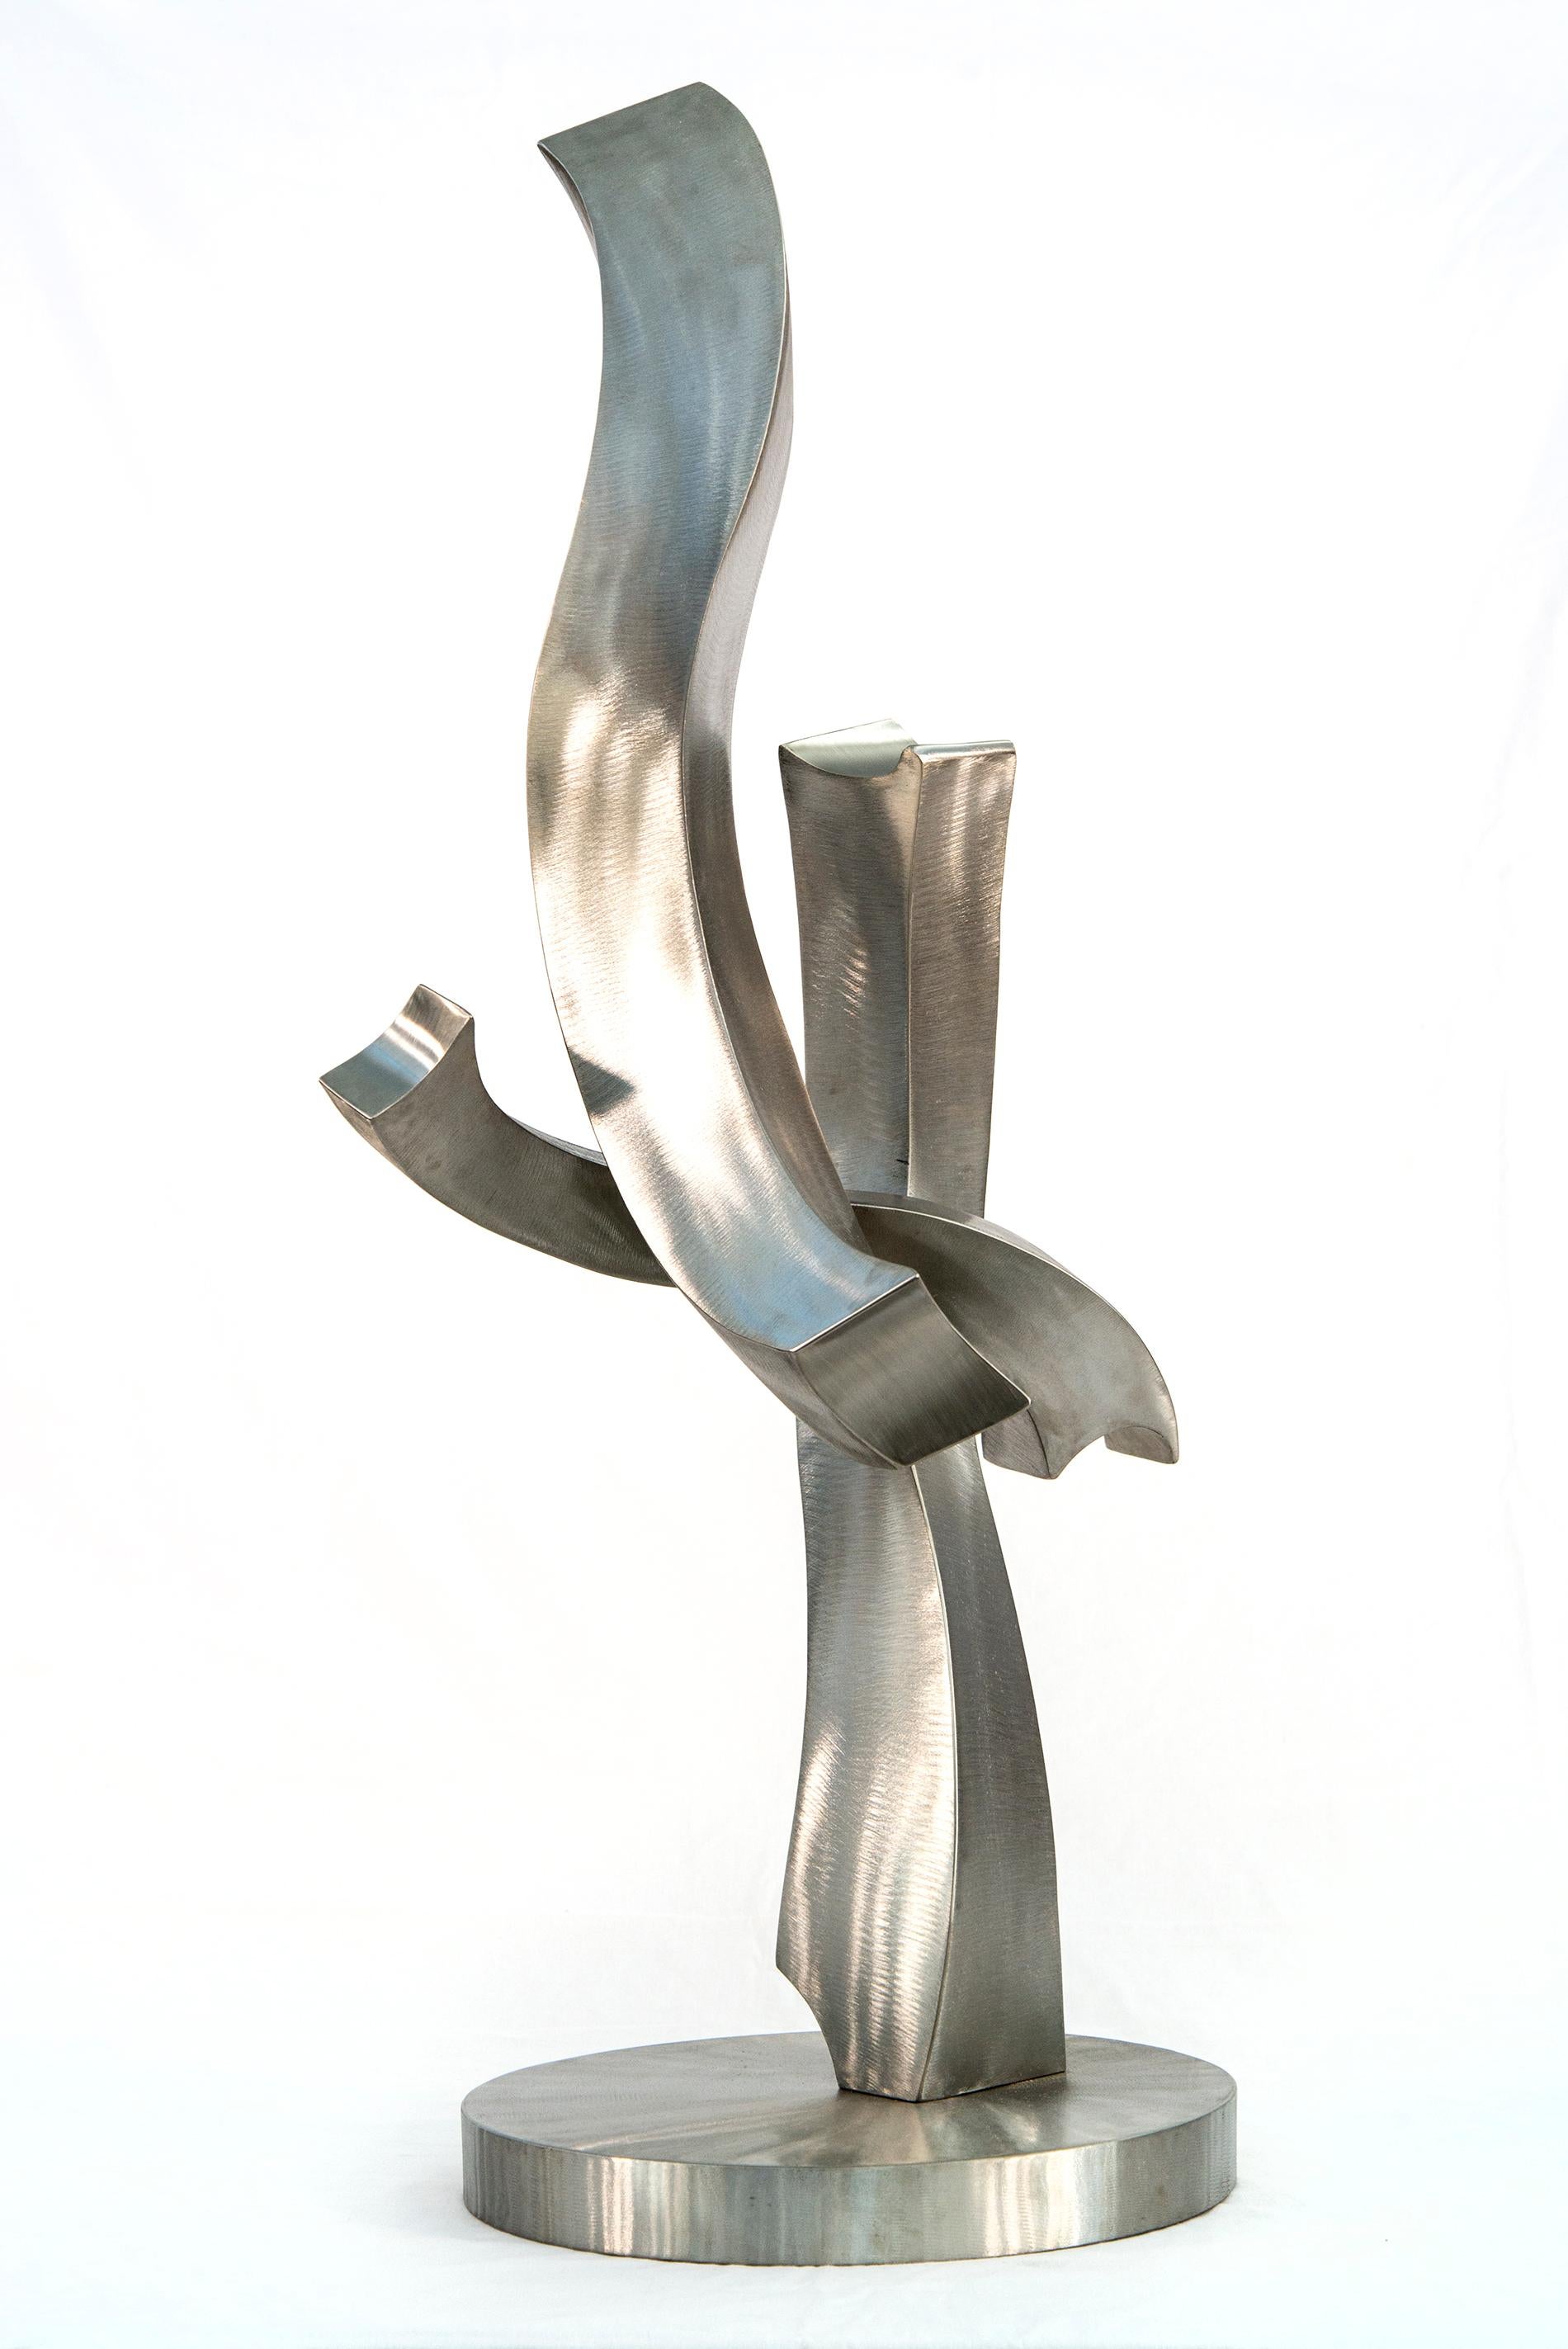 Un coup de foudre d'éclat - sculpture contemporaine et abstraite en acier inoxydable forgé - Sculpture de Kevin Robb